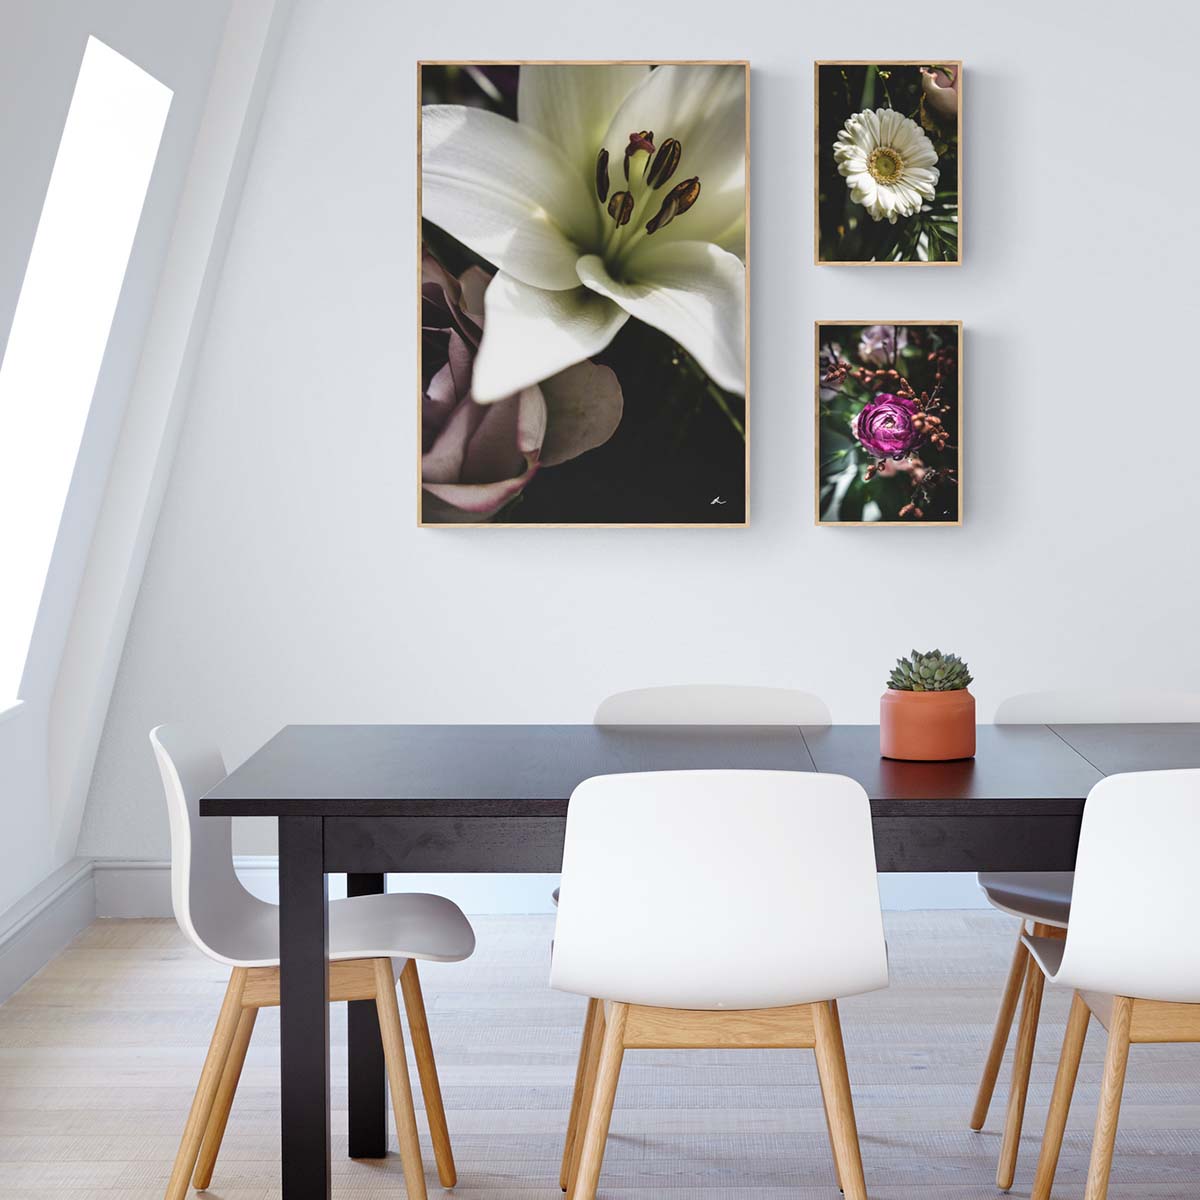 Plakat inspiration - Blomster motiver i hjemmet - By Boel